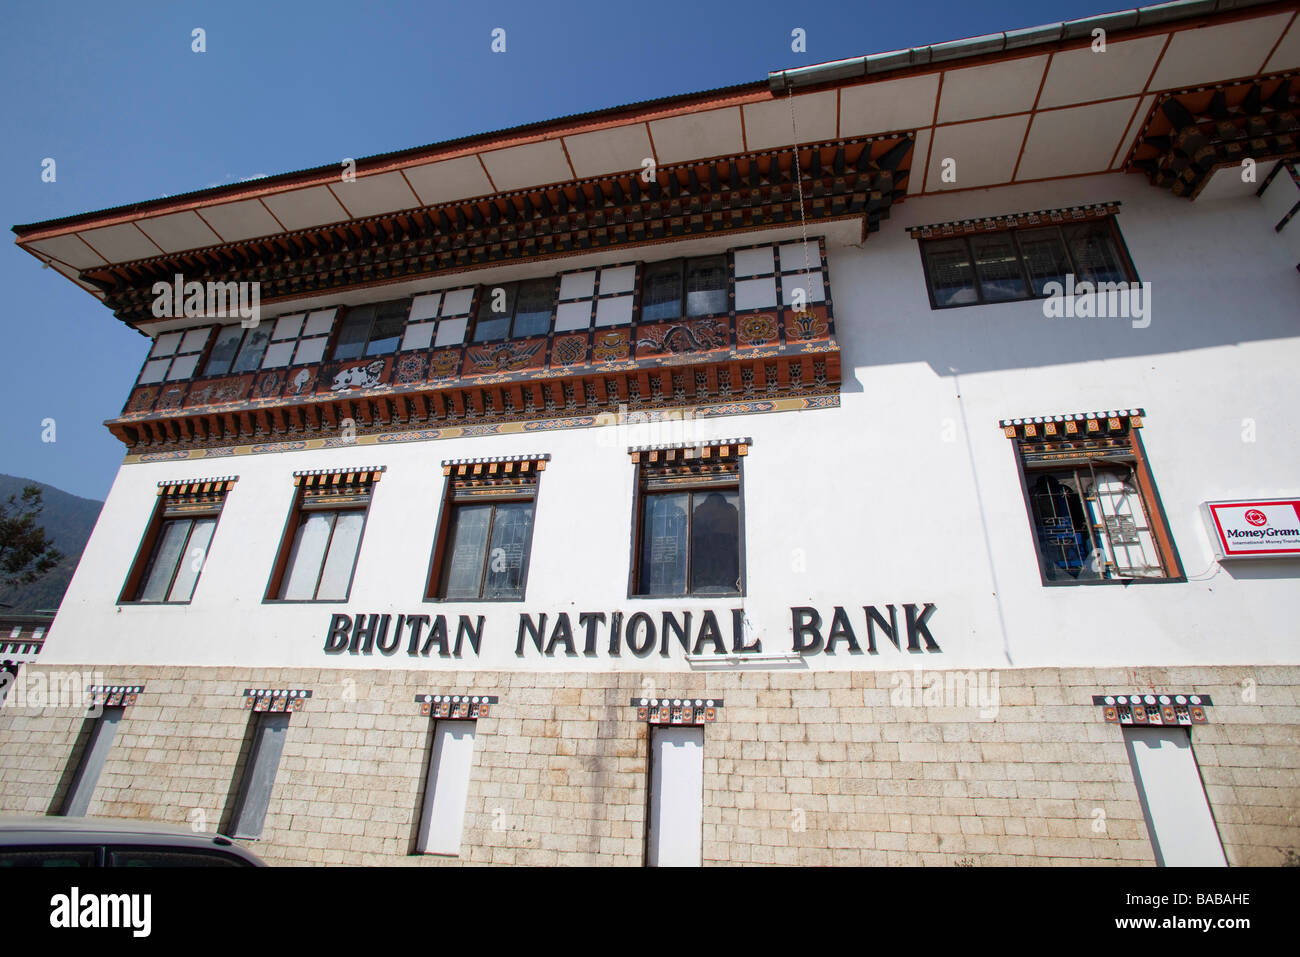 General post office et le Bhoutan national bank building à Thimphu, Bhoutan Asie 90999 Bhutan-Thimphu Banque D'Images